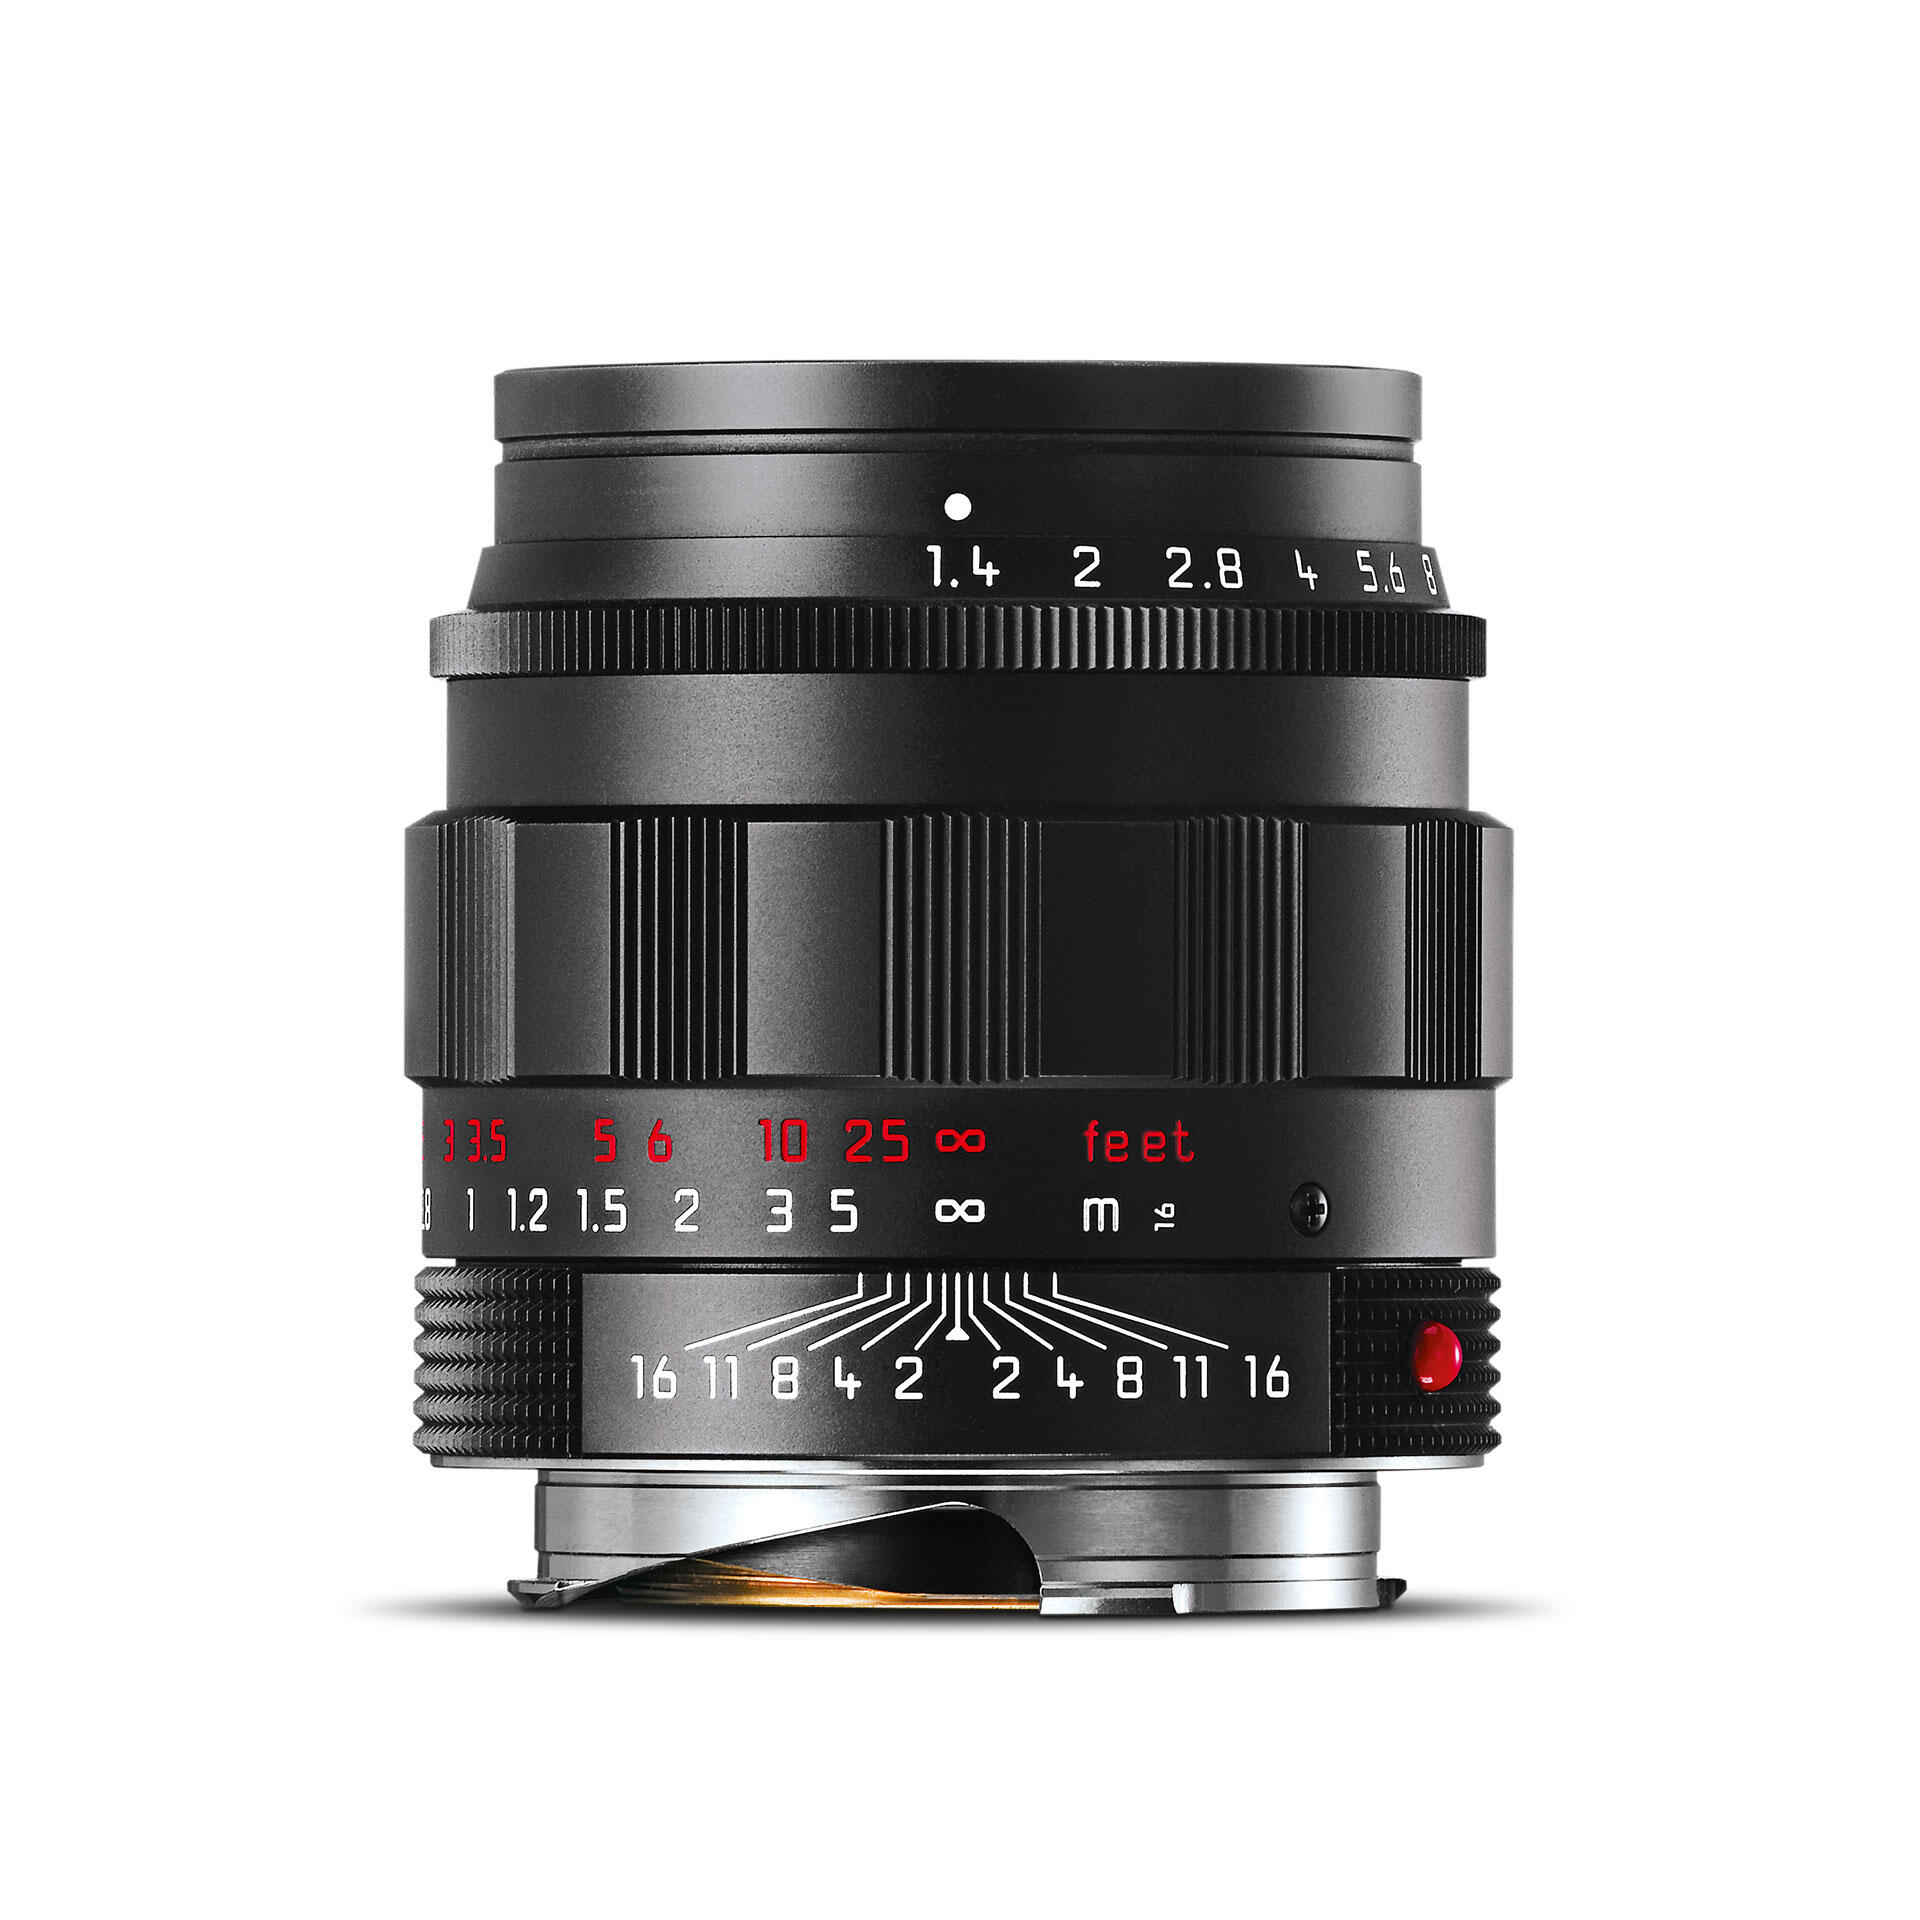 ズミルックスM 1.4/50mm ASPH. ブラック | Leica Camera JP